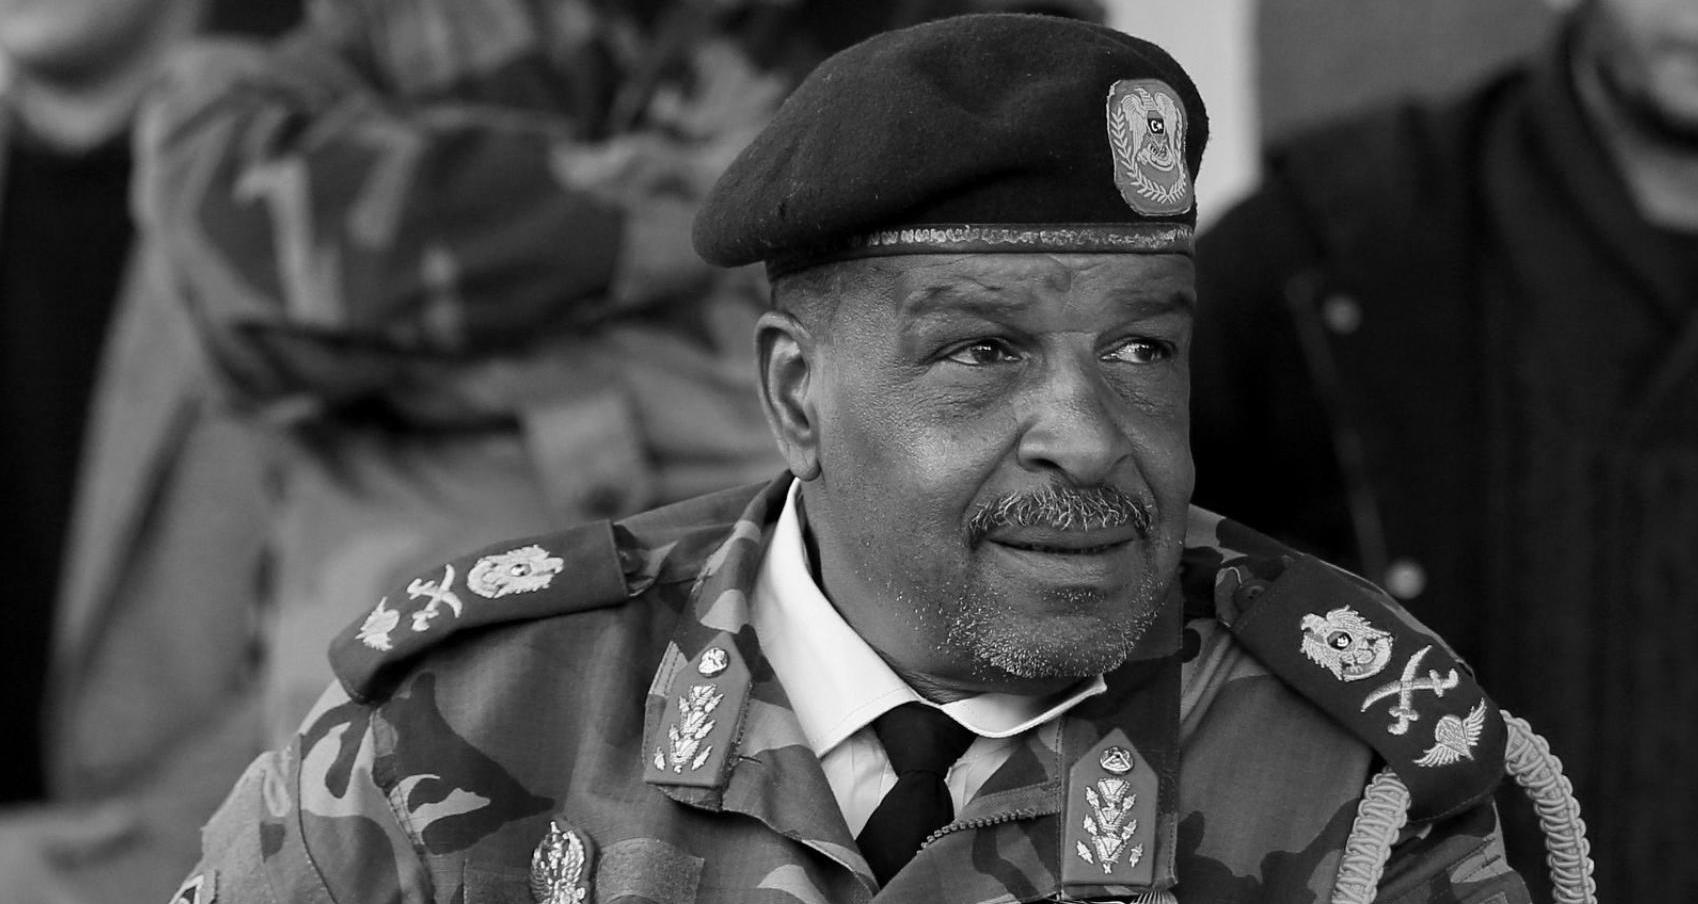 الجيش الليبي ينعى وفاة اللواء بوخمادة: كان يتقدم الصفوف في محاربة الإرهاب